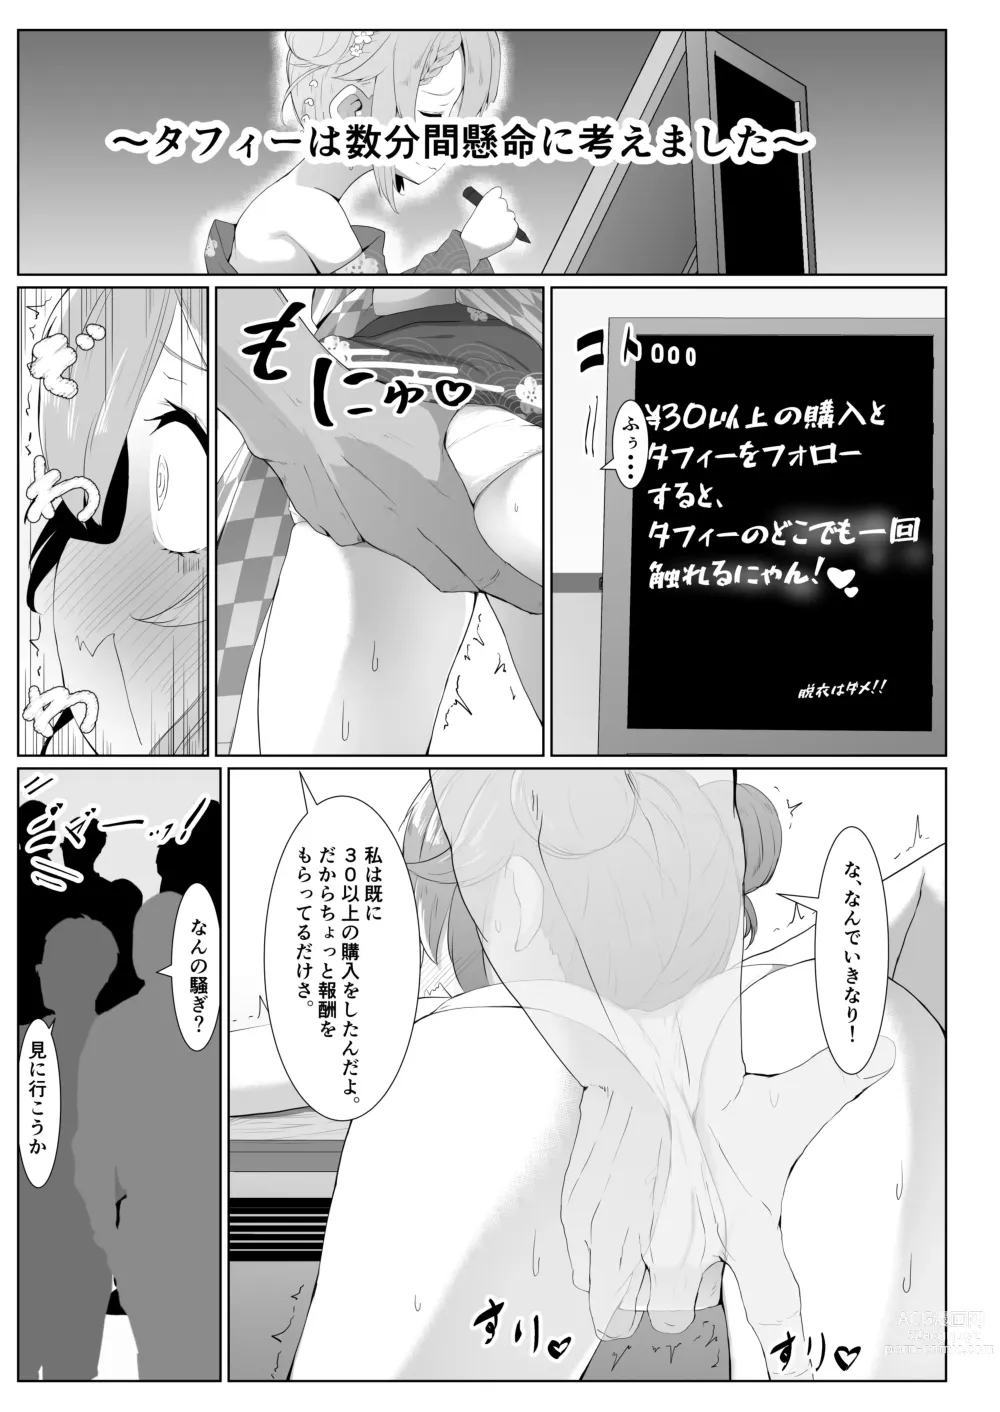 Page 7 of doujinshi Taffy no Hajimete no Event